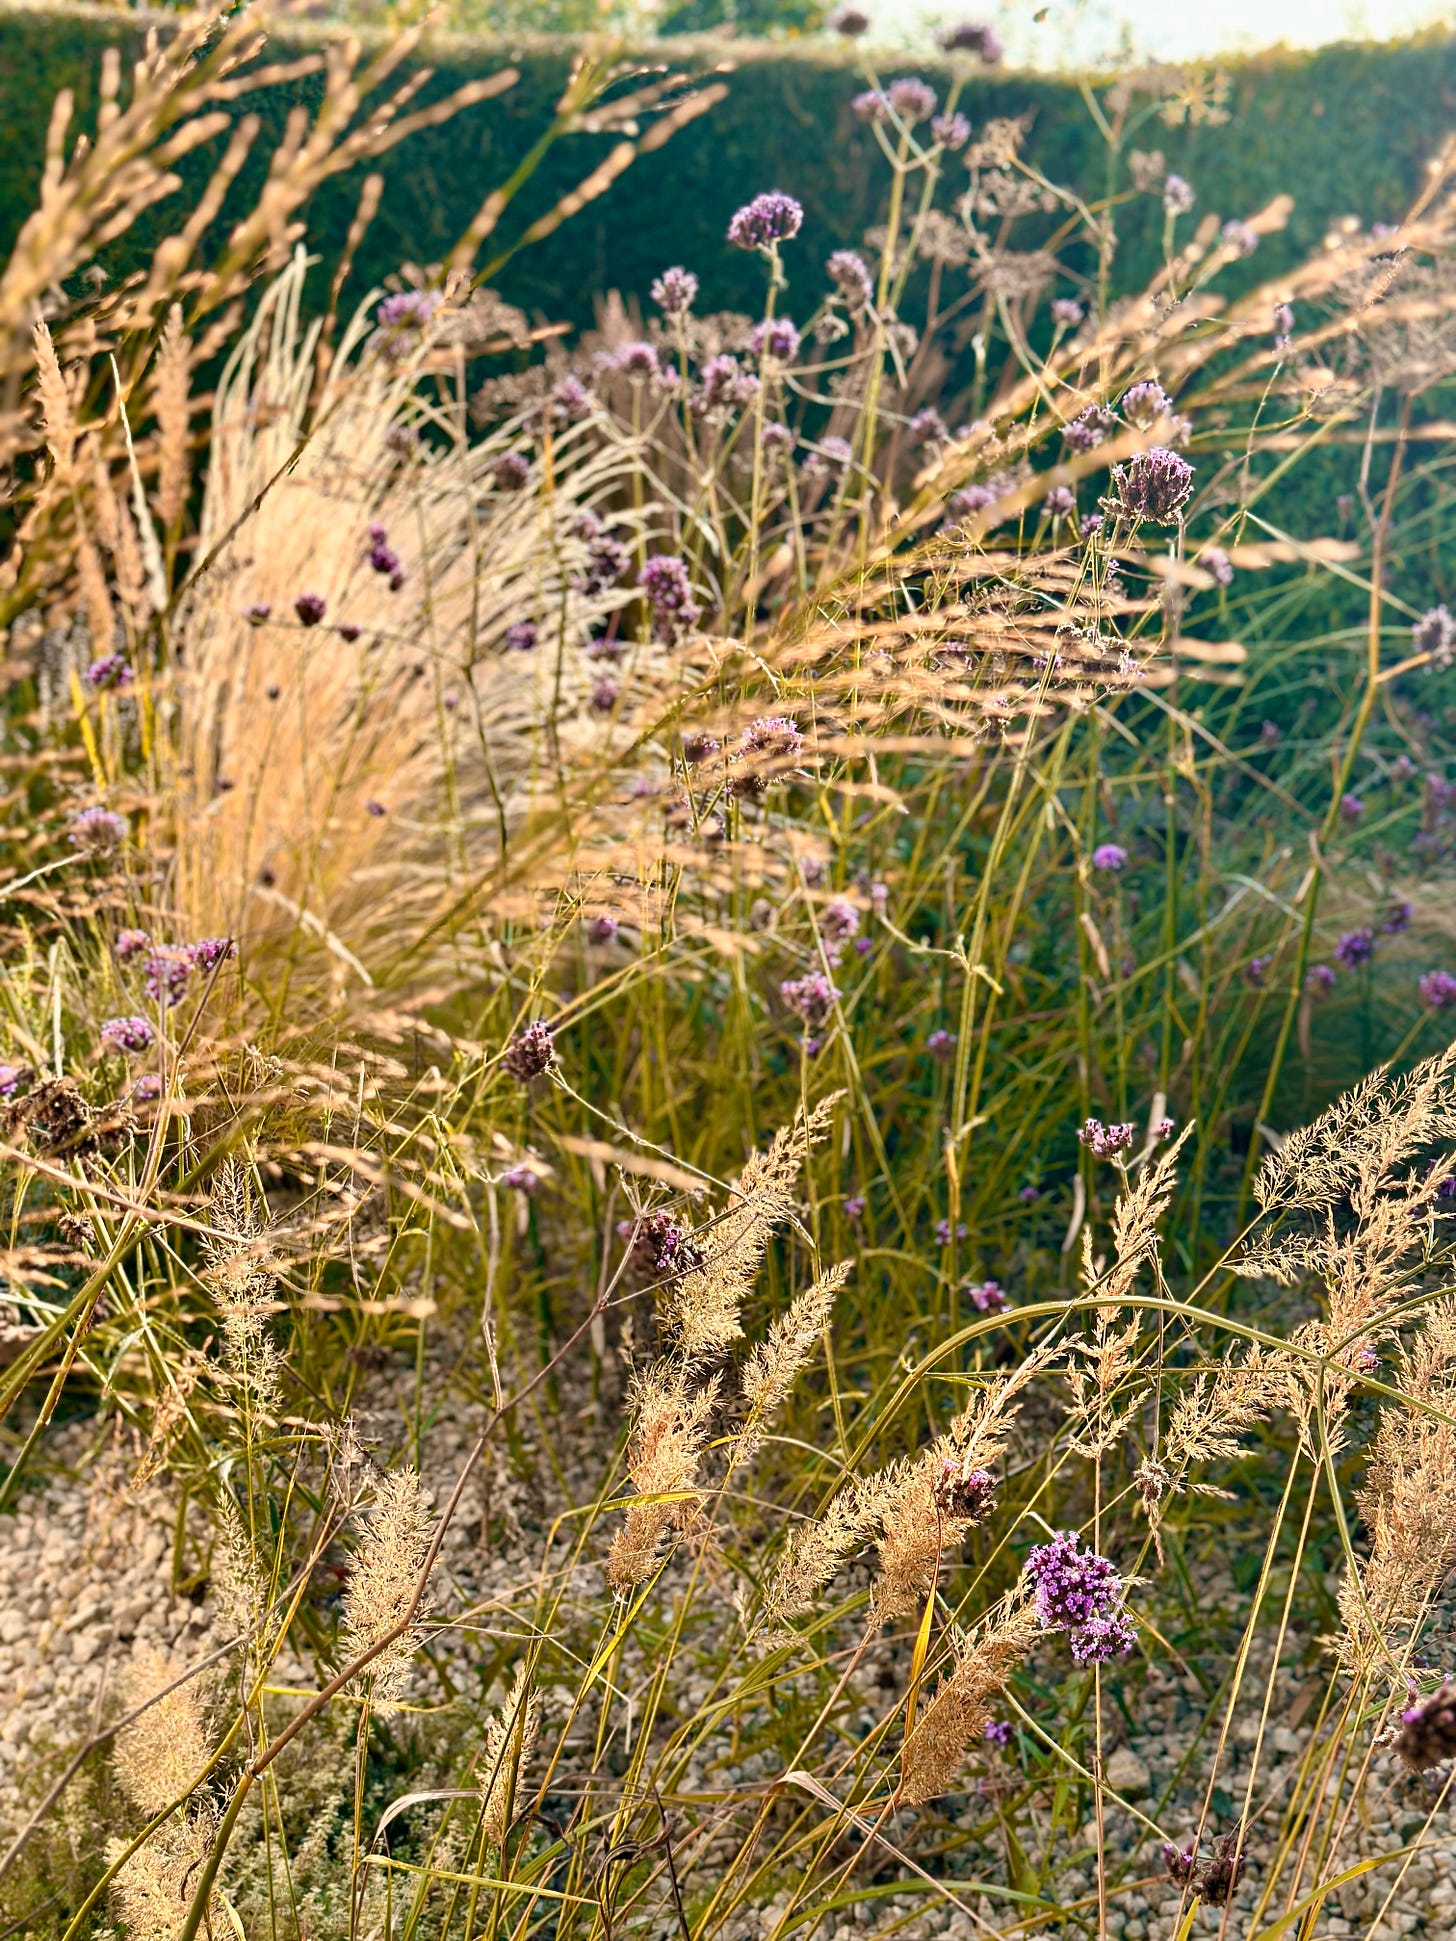 Grasses and golden light in a gravel garden